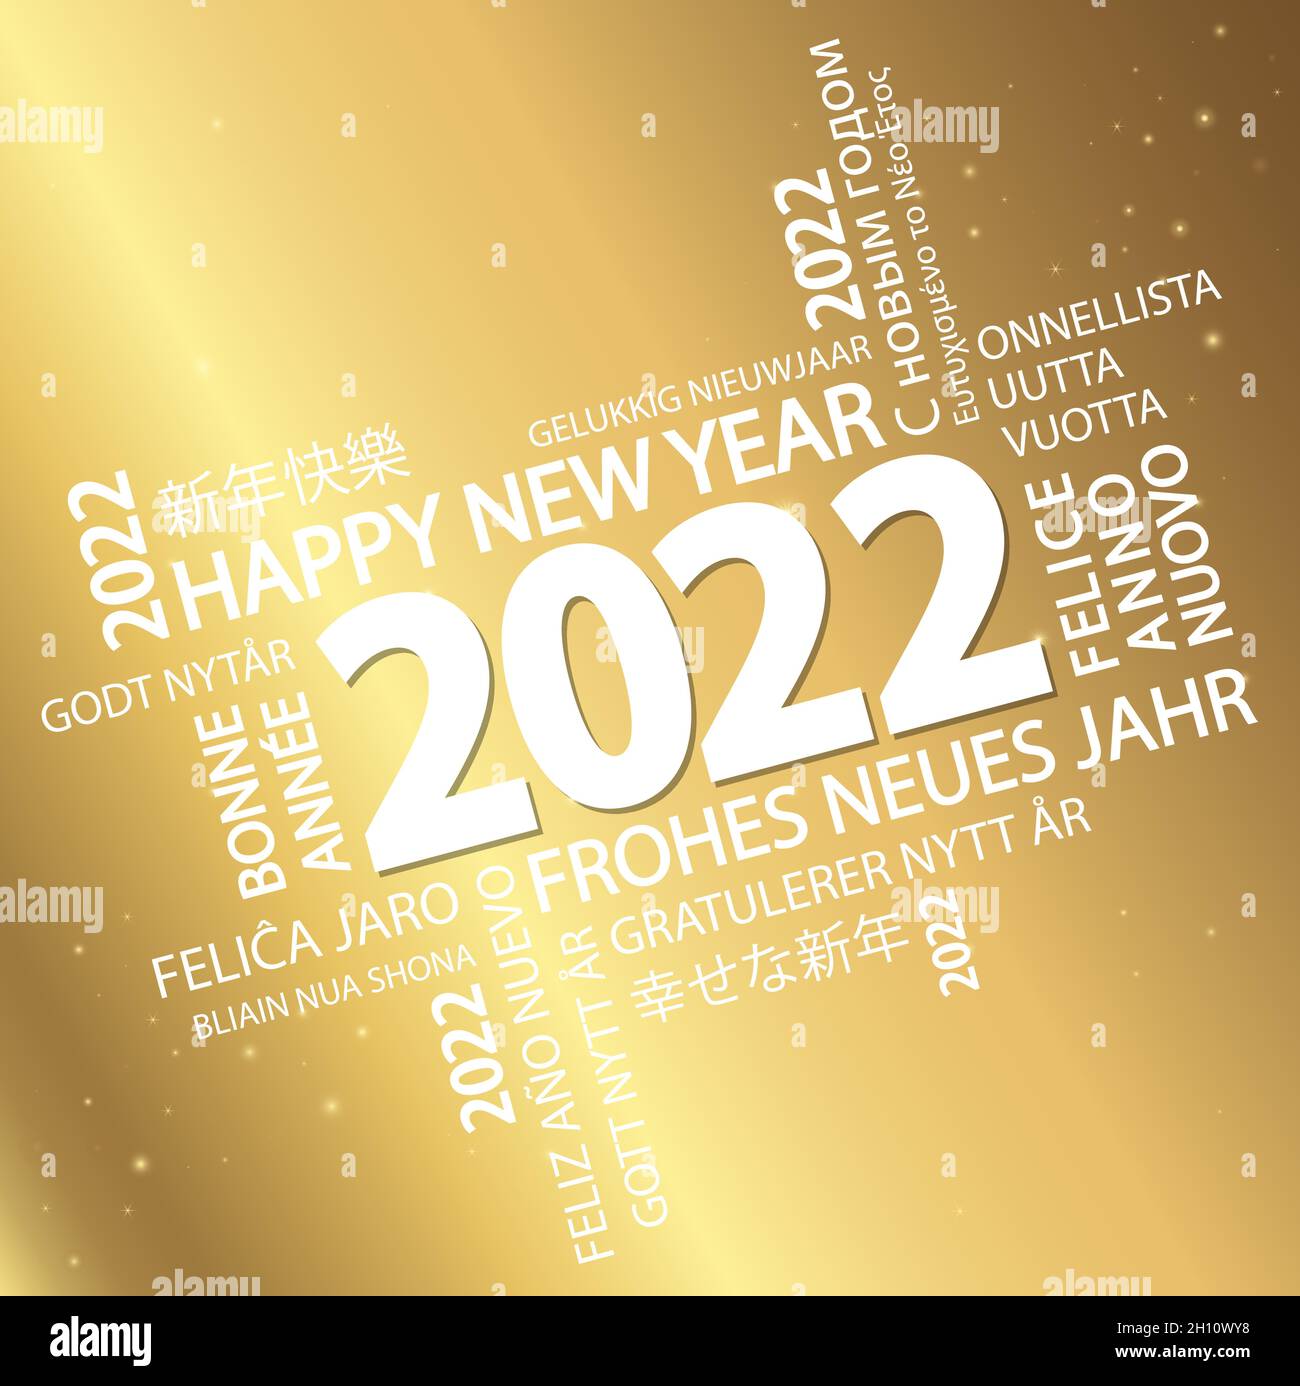 fichier vectoriel eps avec nuage de mots avec message de bienvenue du nouvel an 2022 et fond doré Illustration de Vecteur